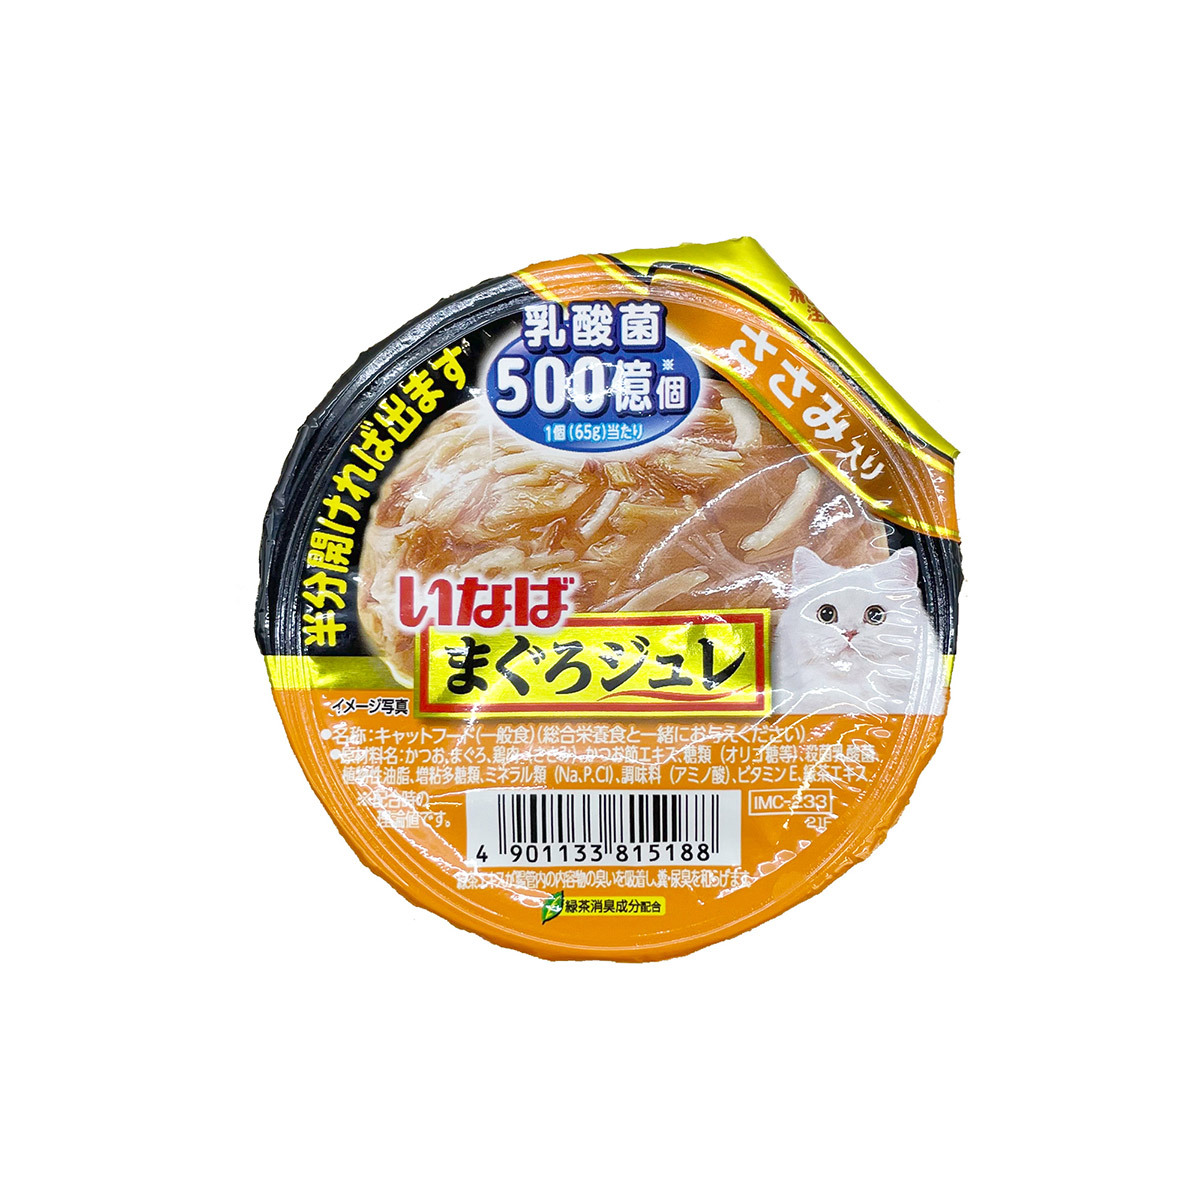 이나바 마구로쥬레 유산균 닭가슴살 65g x 48입